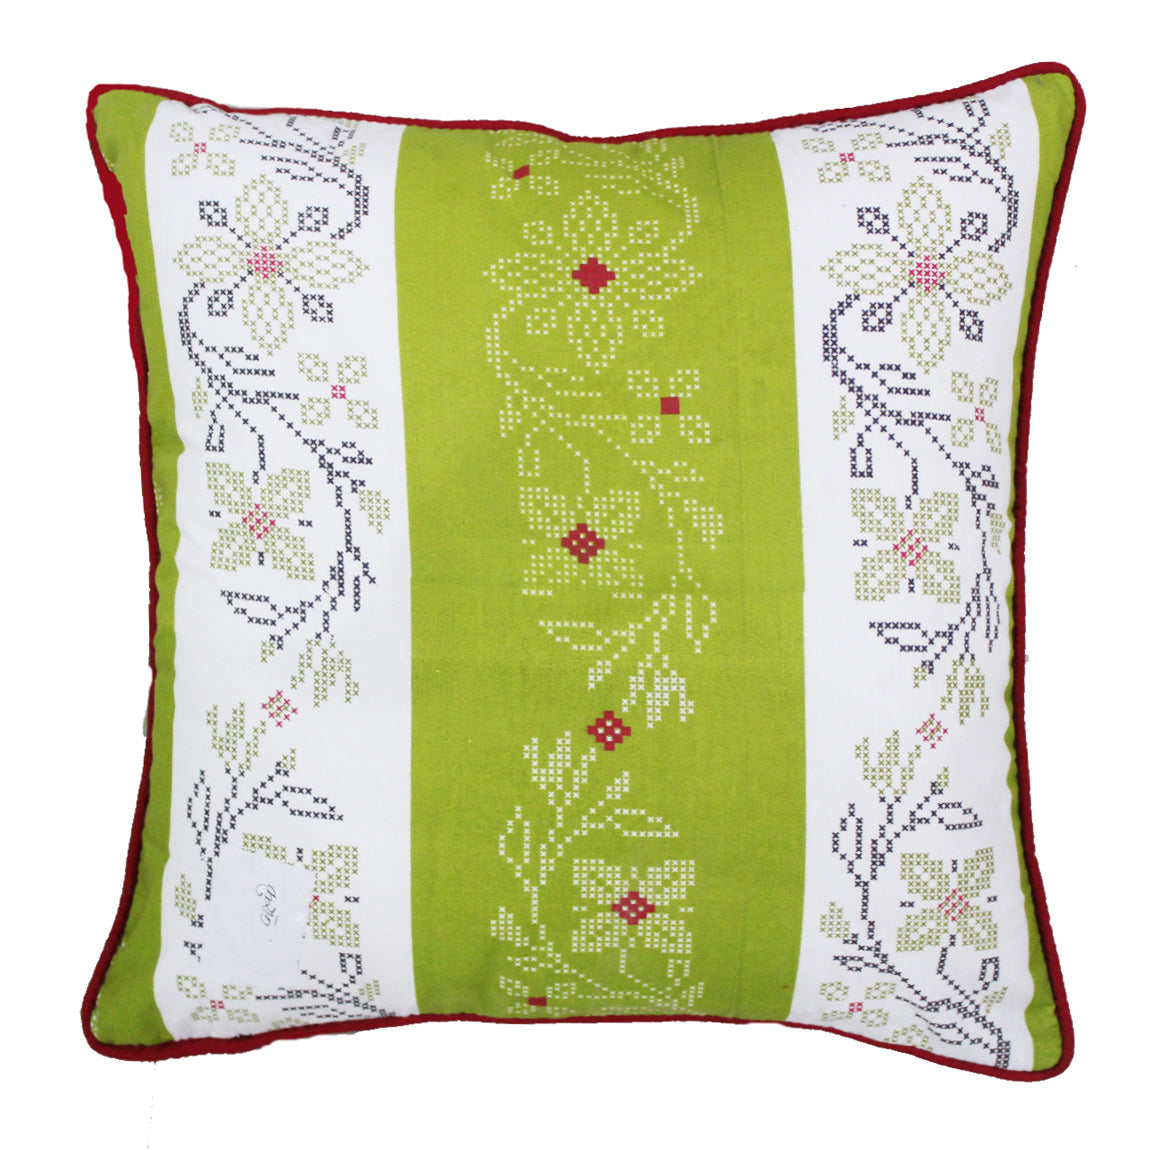 Quartz Printed Floral Cotton Cushion Cover - Green